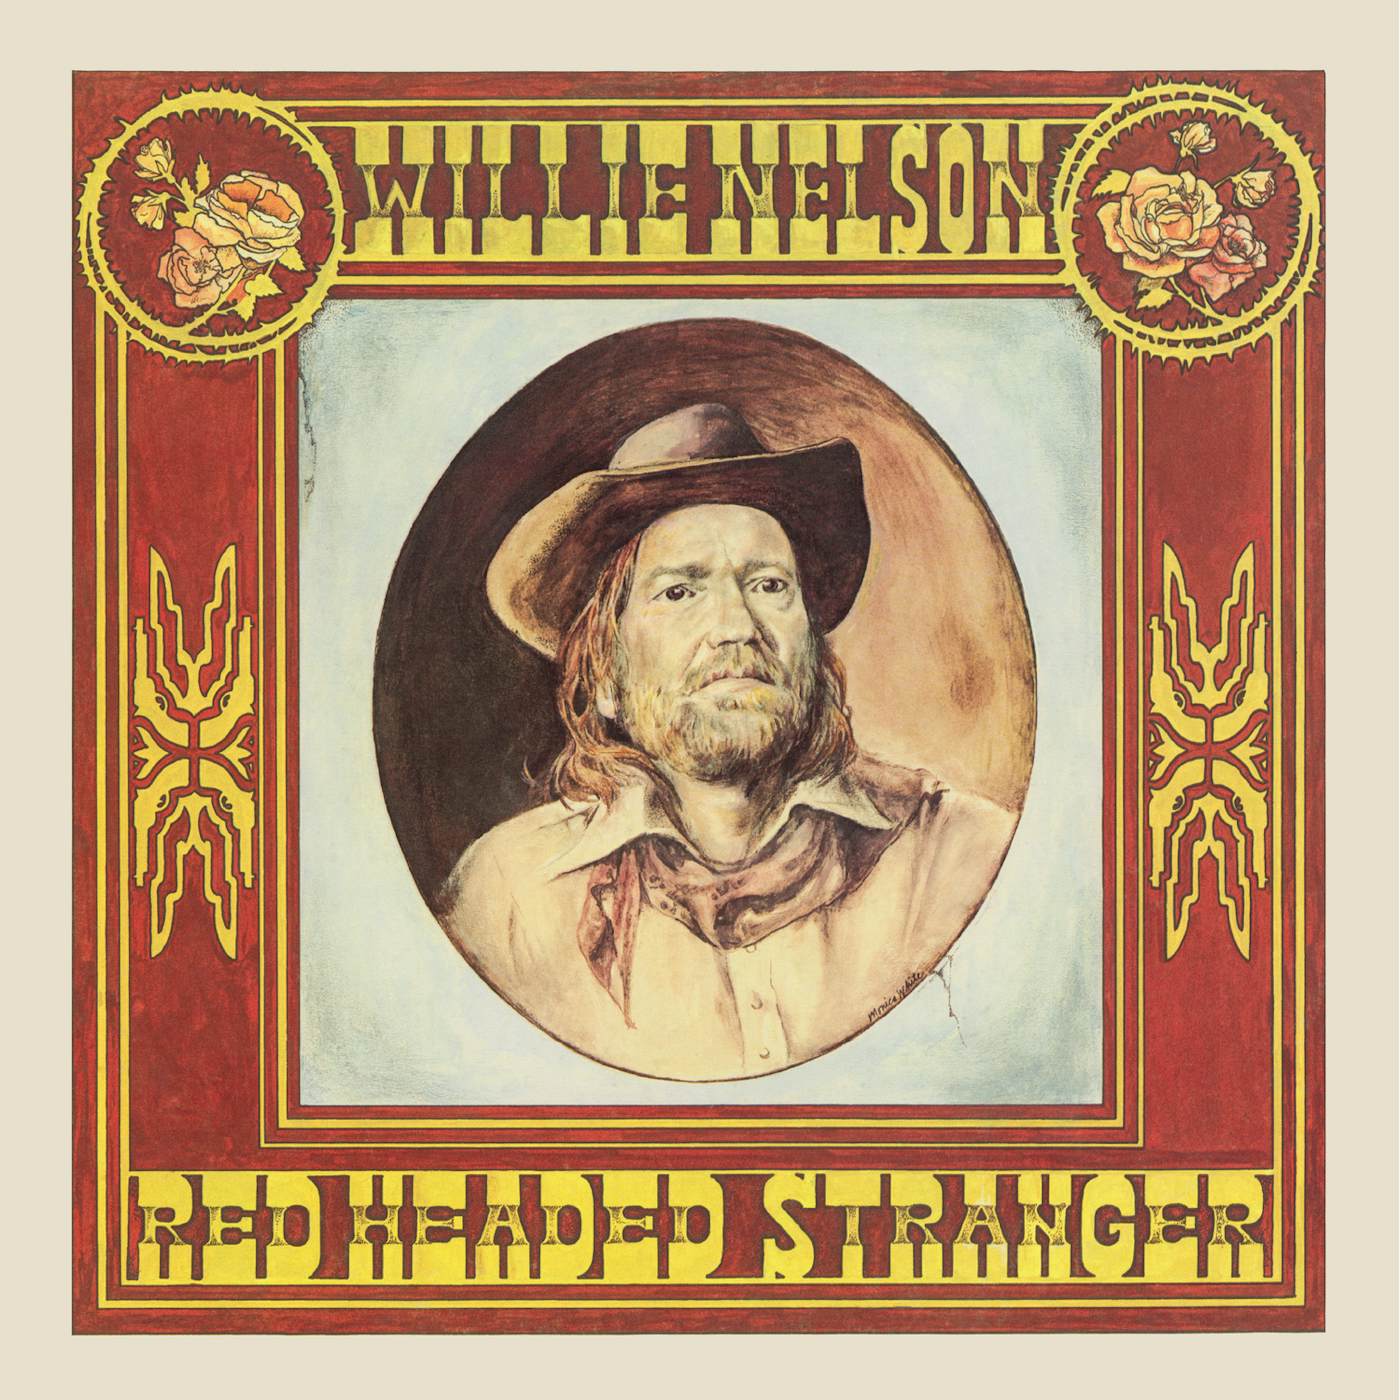 Willie Nelson Red Headed Stranger (180g) Vinyl Record